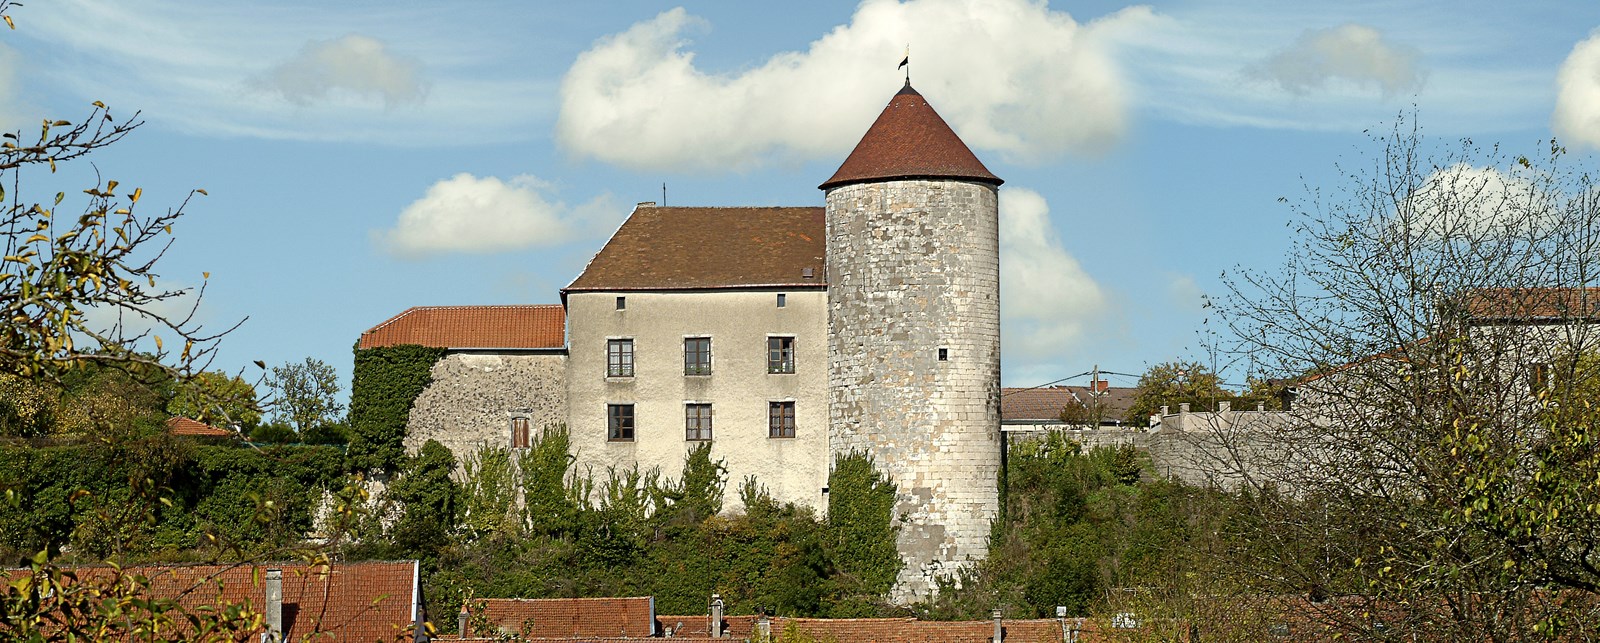 Gondrecourt le château - Photo Michel PETIT